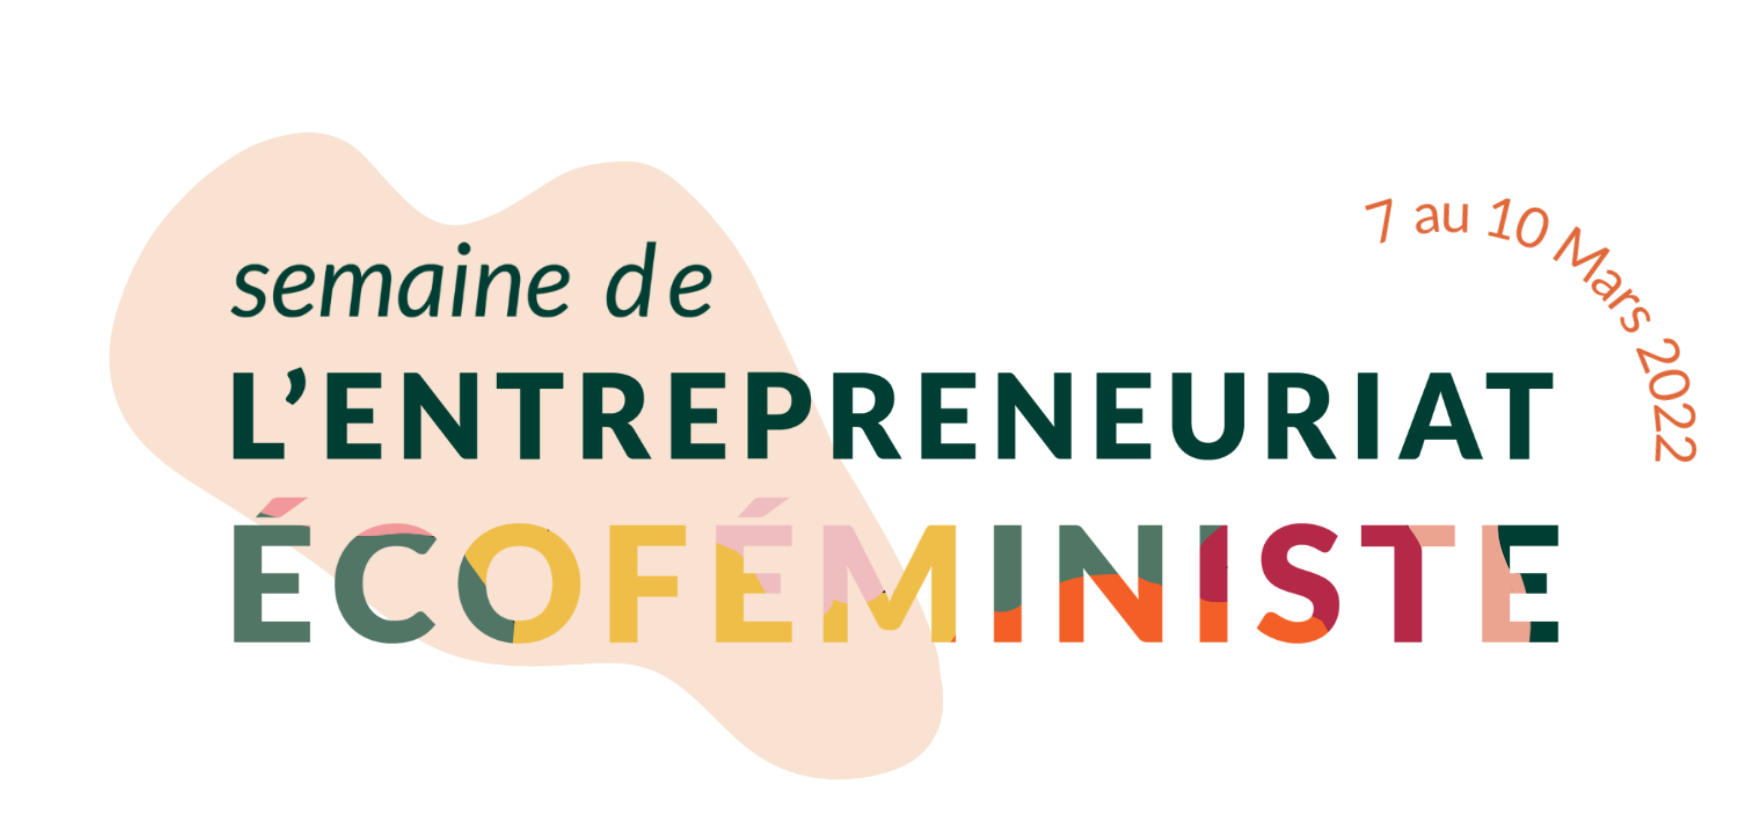 Semaine de l'Entrepreneuriat Ecofeministe